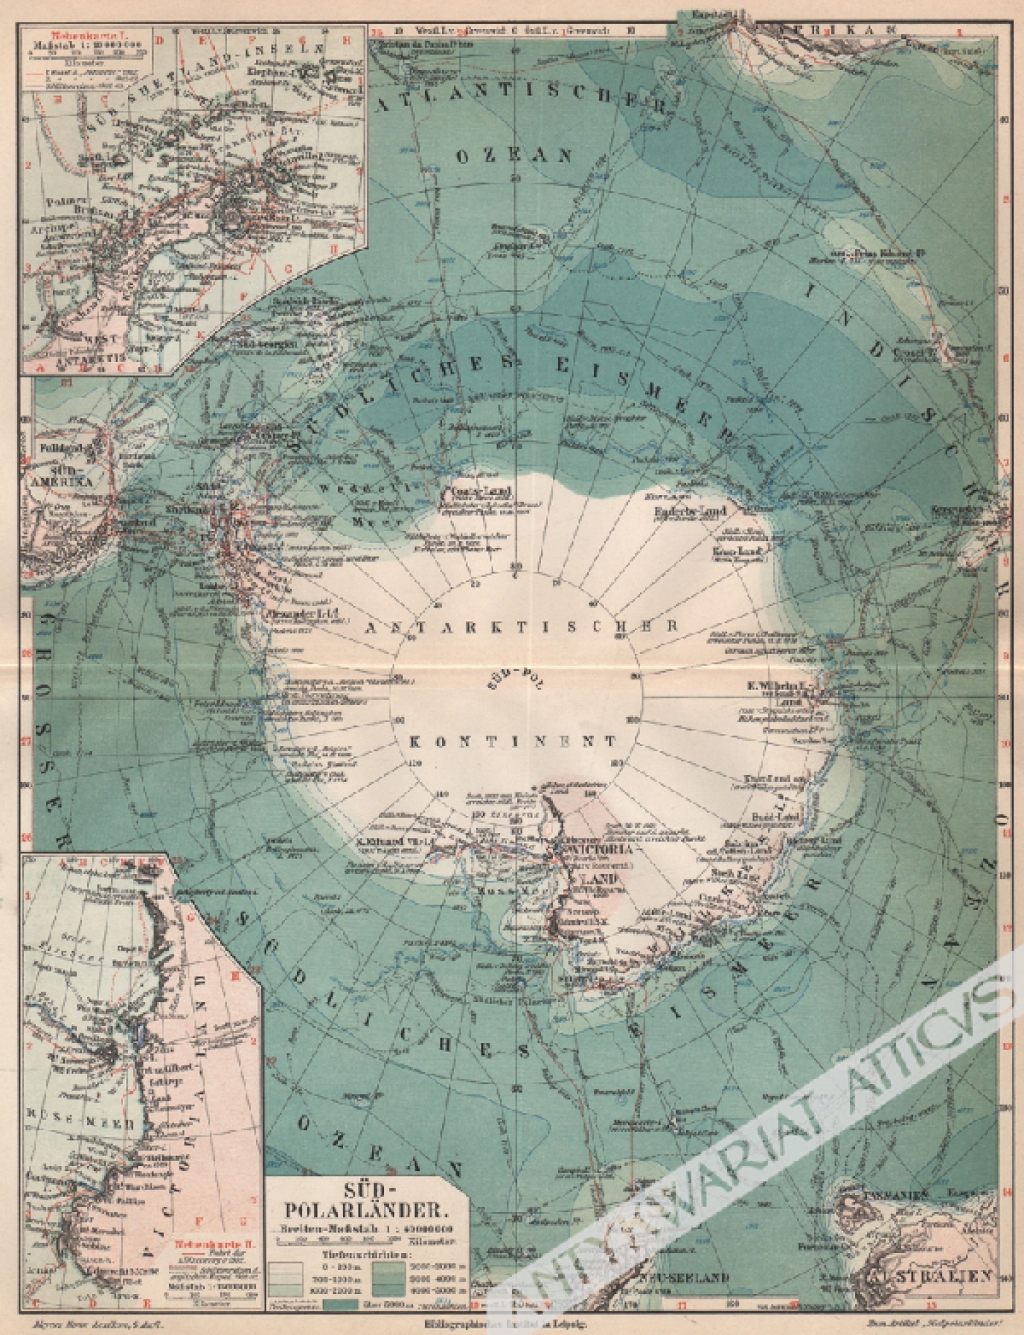 [mapa, 1908] Karte der Sudpolarlander [Antarktyda]